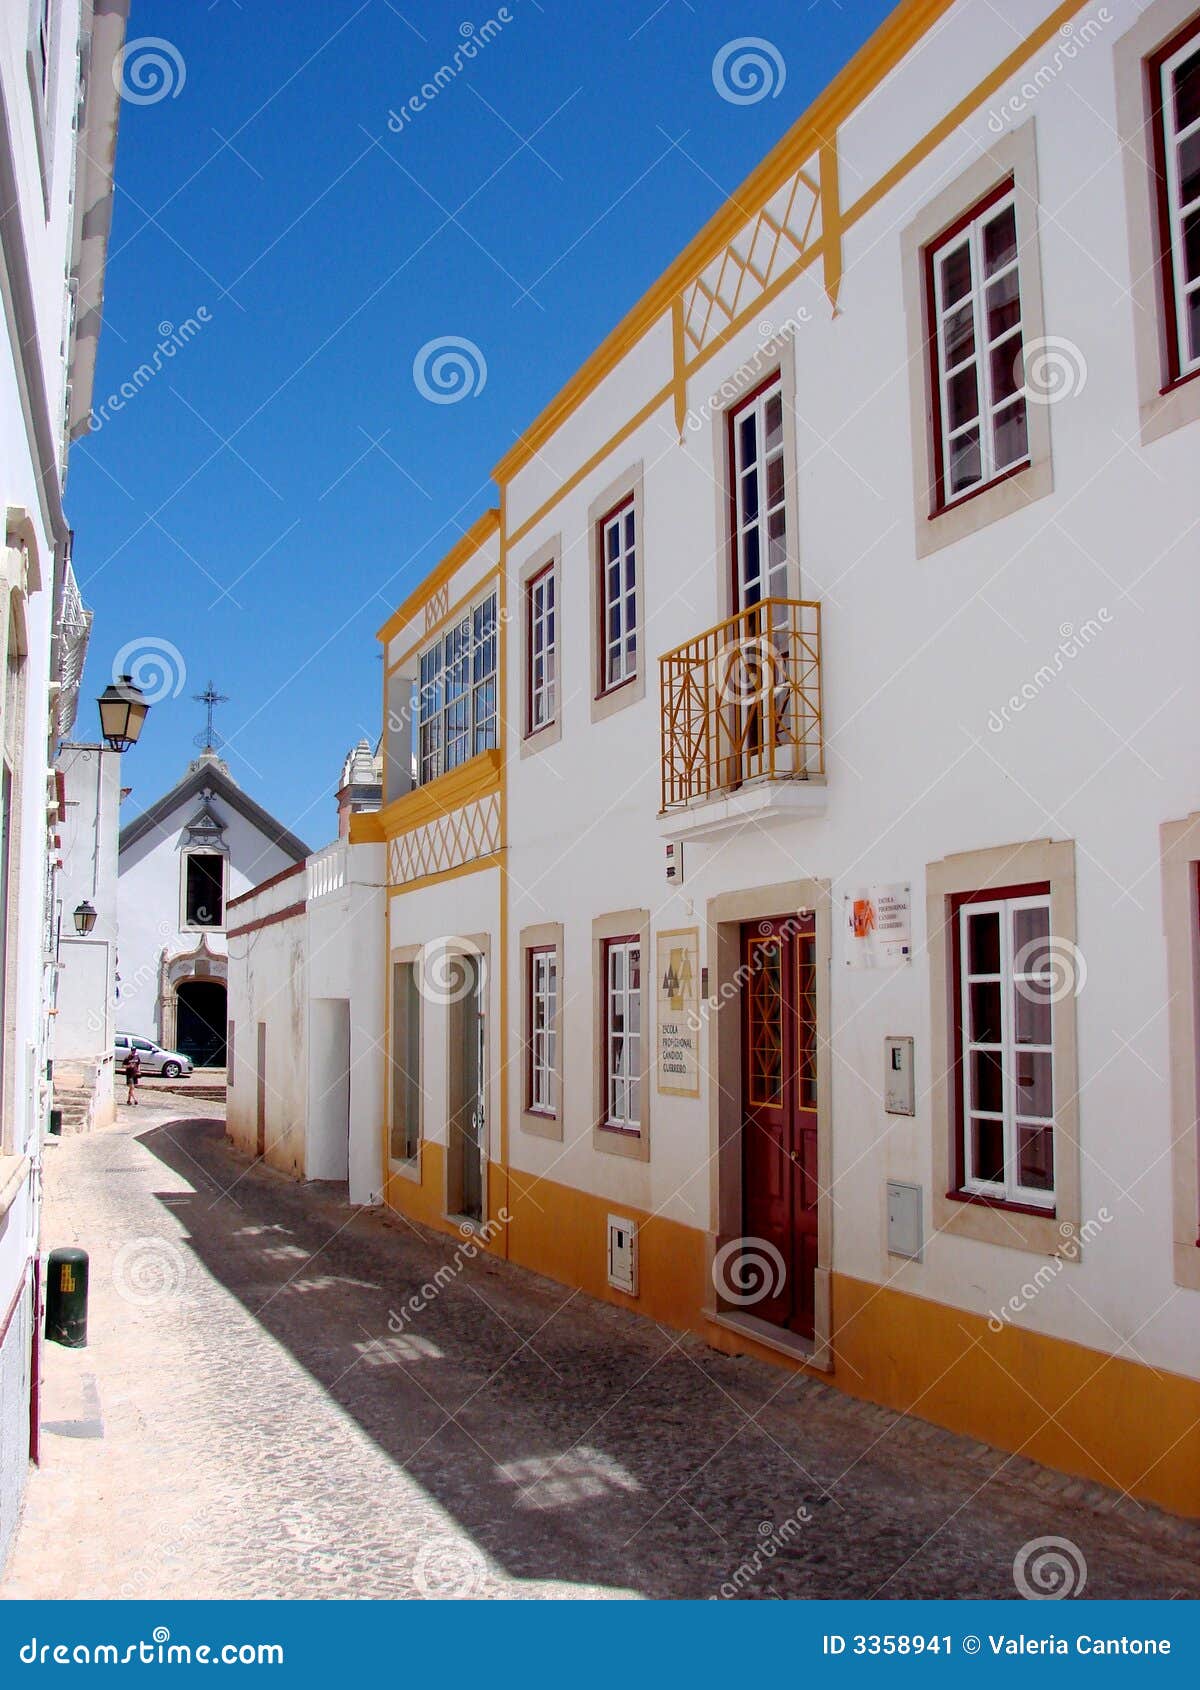 alte village street, portugal